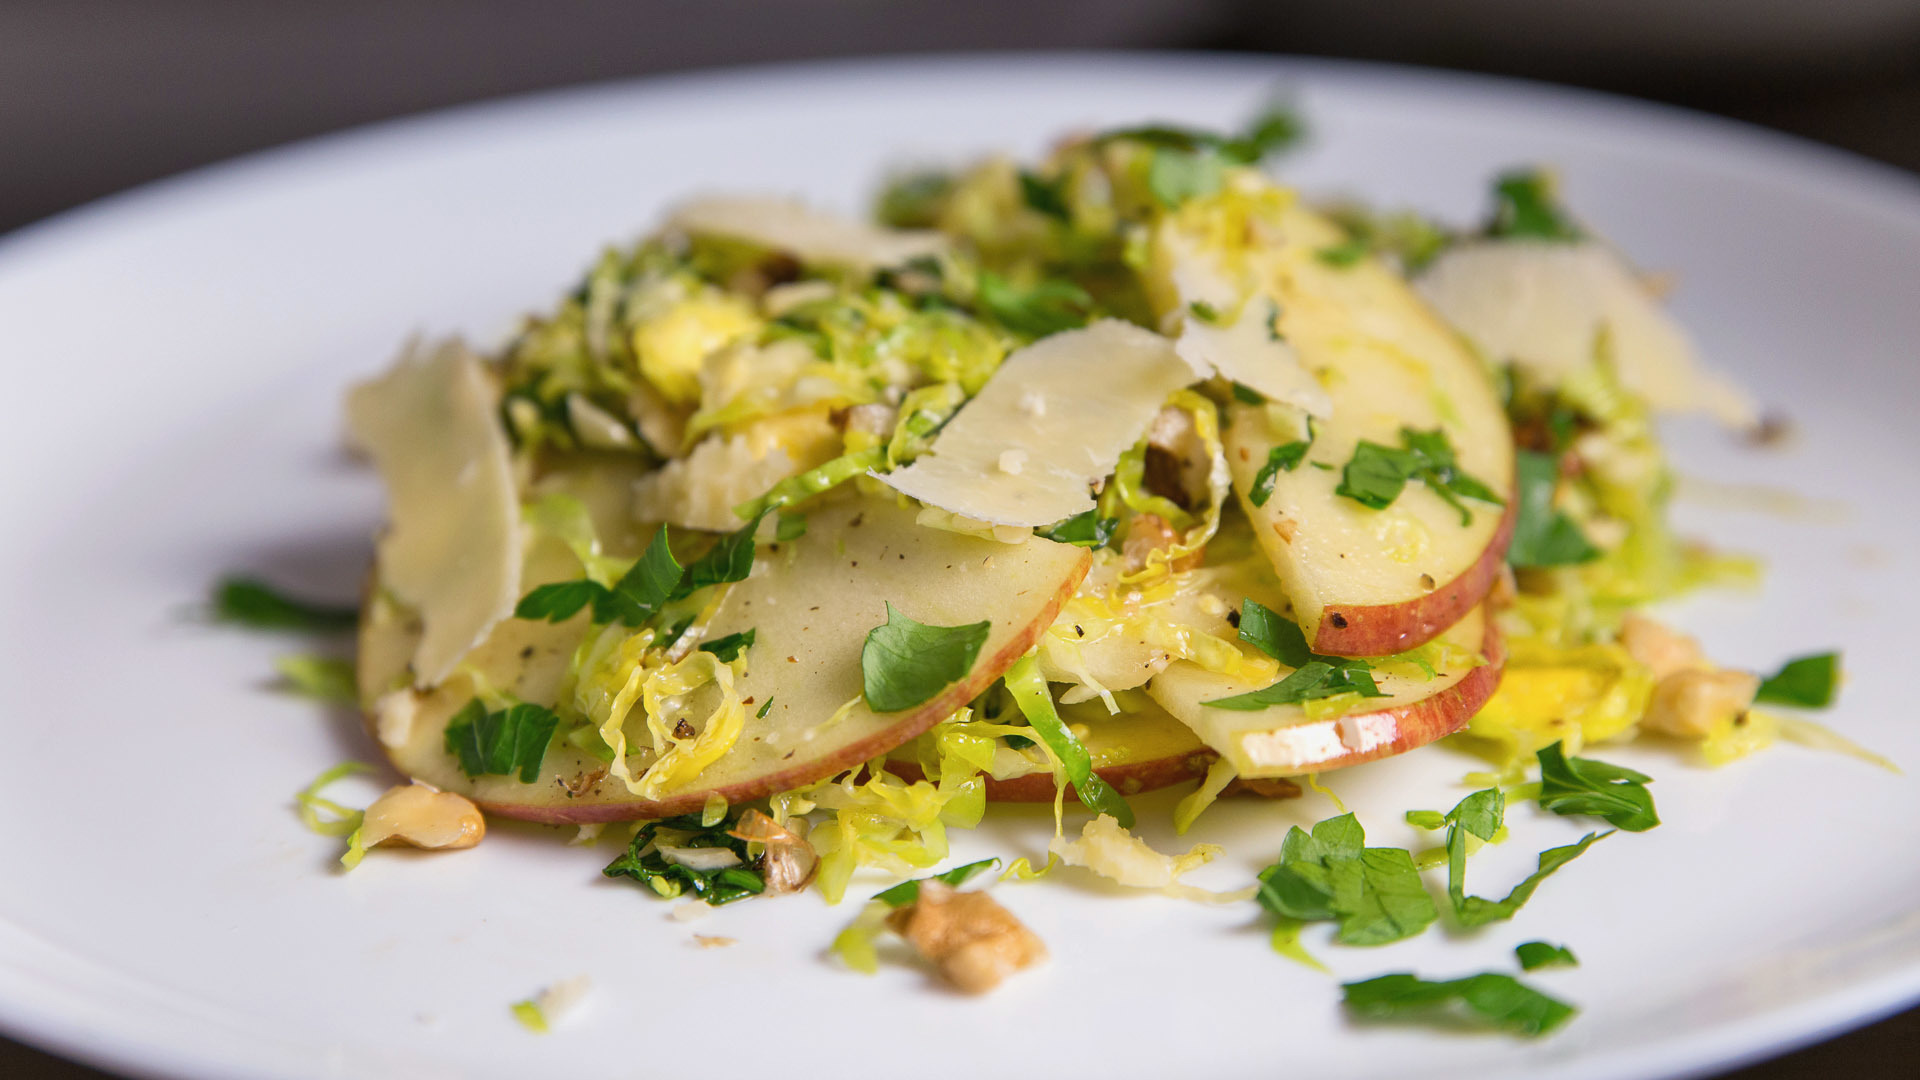 Фото к рецепту: салат с брюссельской капустой